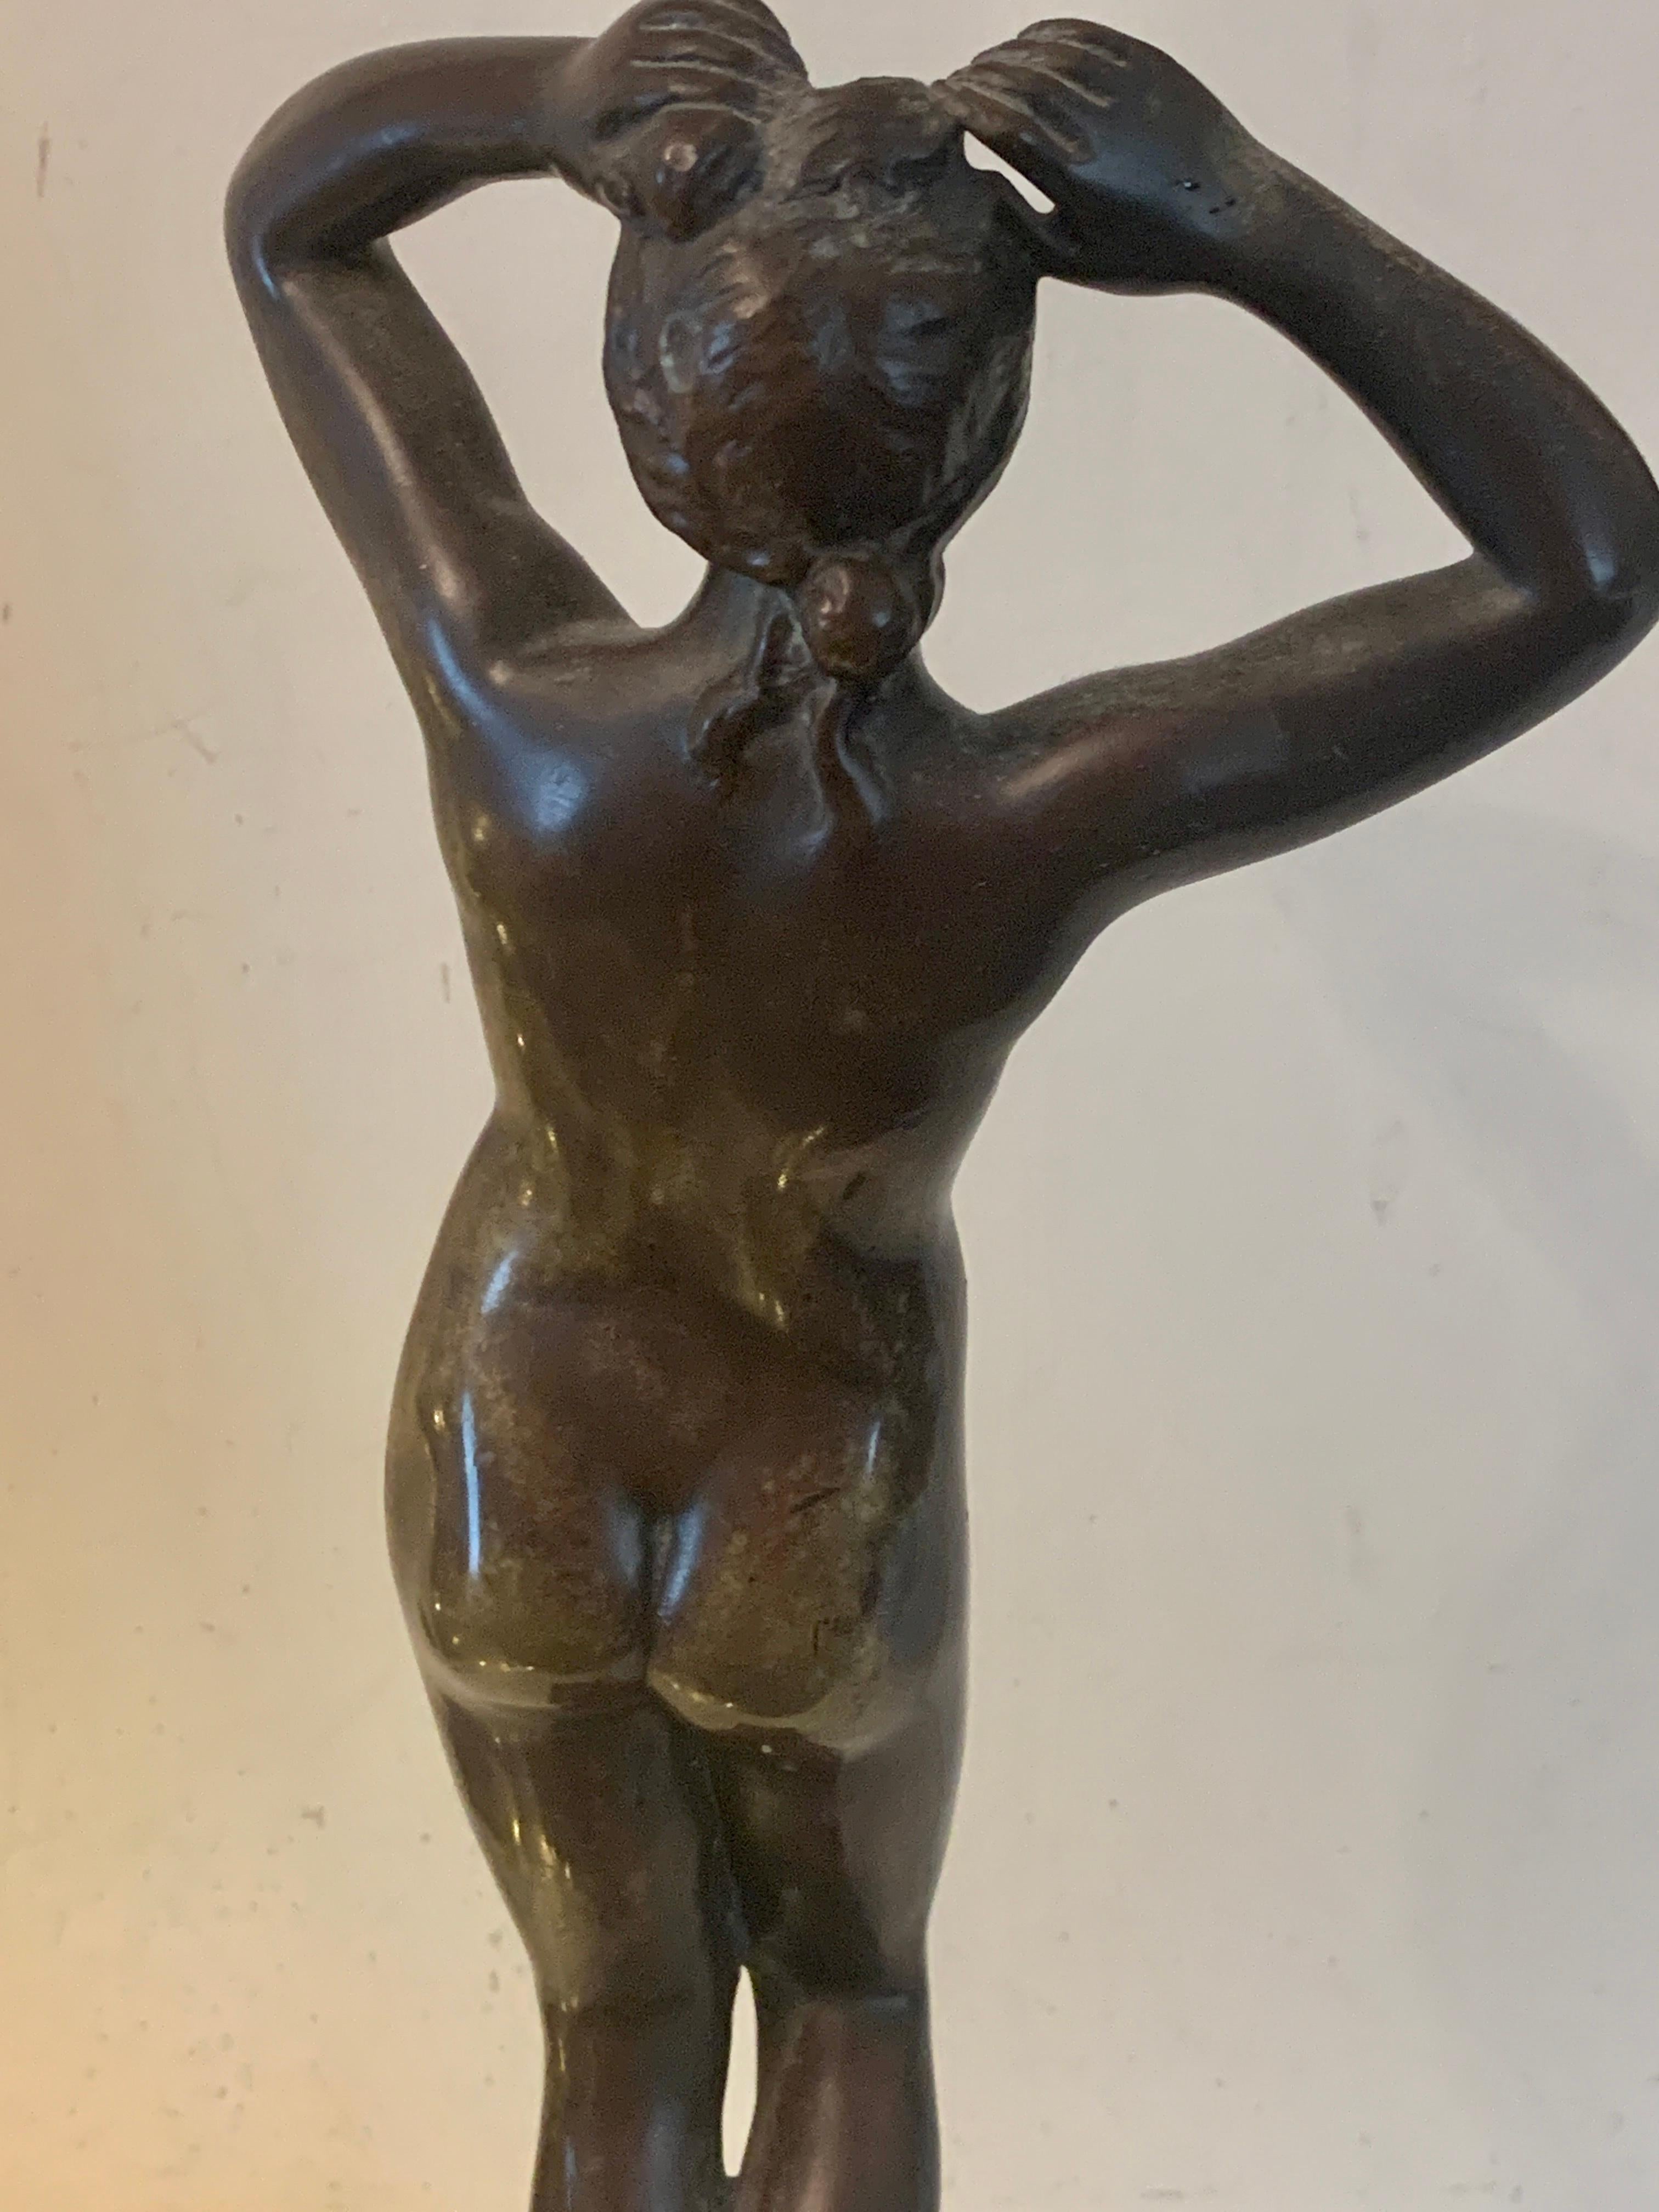 Bronze français du XIXe siècle bien modelé représentant une femme nue debout. 

Signée Cartinet, cette pièce est un merveilleux exemple de l'habileté d'un sculpteur.

La pièce conserve toute sa patine d'origine et ne présente aucune